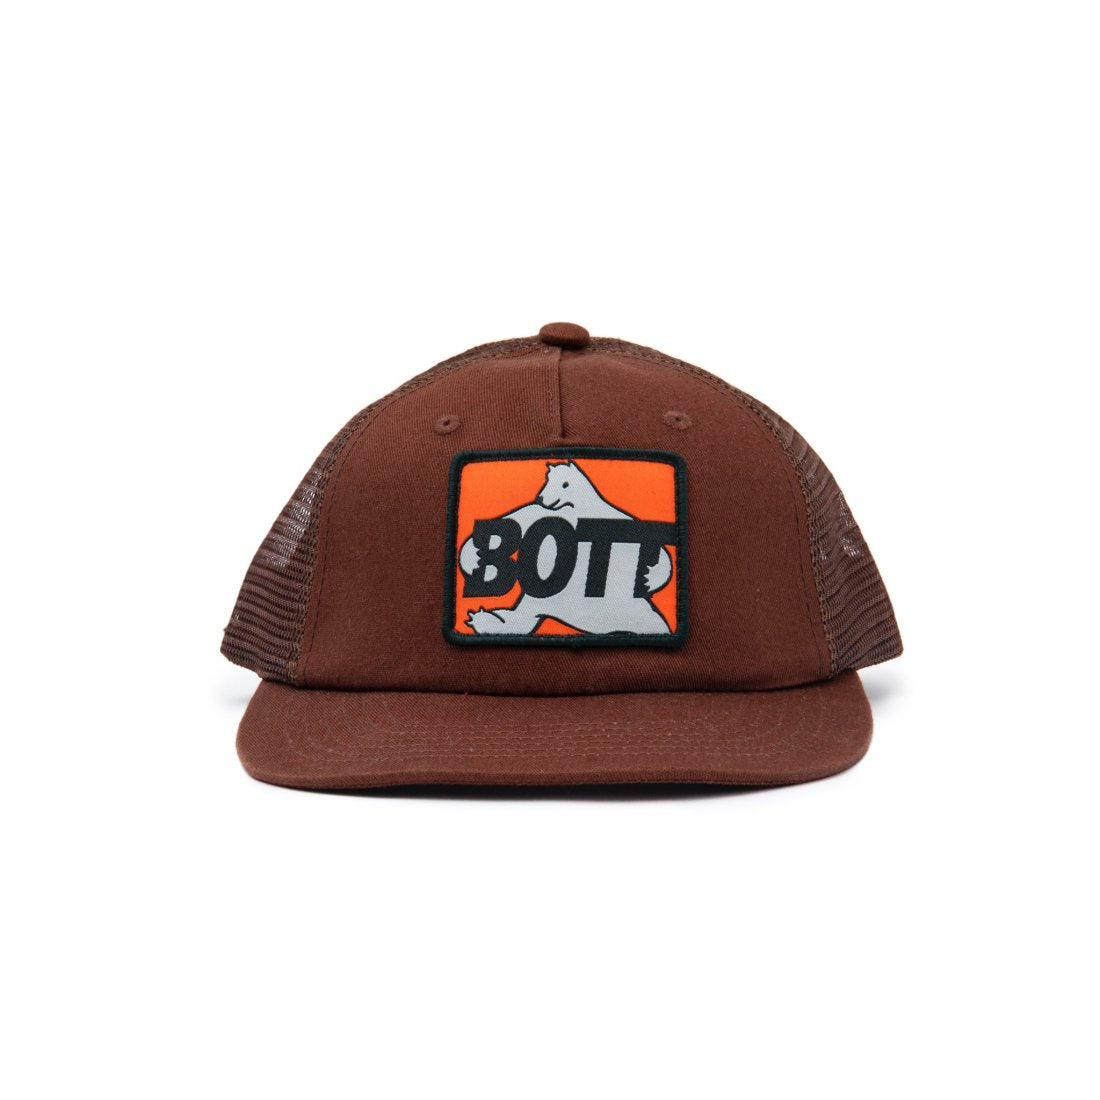 BoTT / BEAR MESH CAP